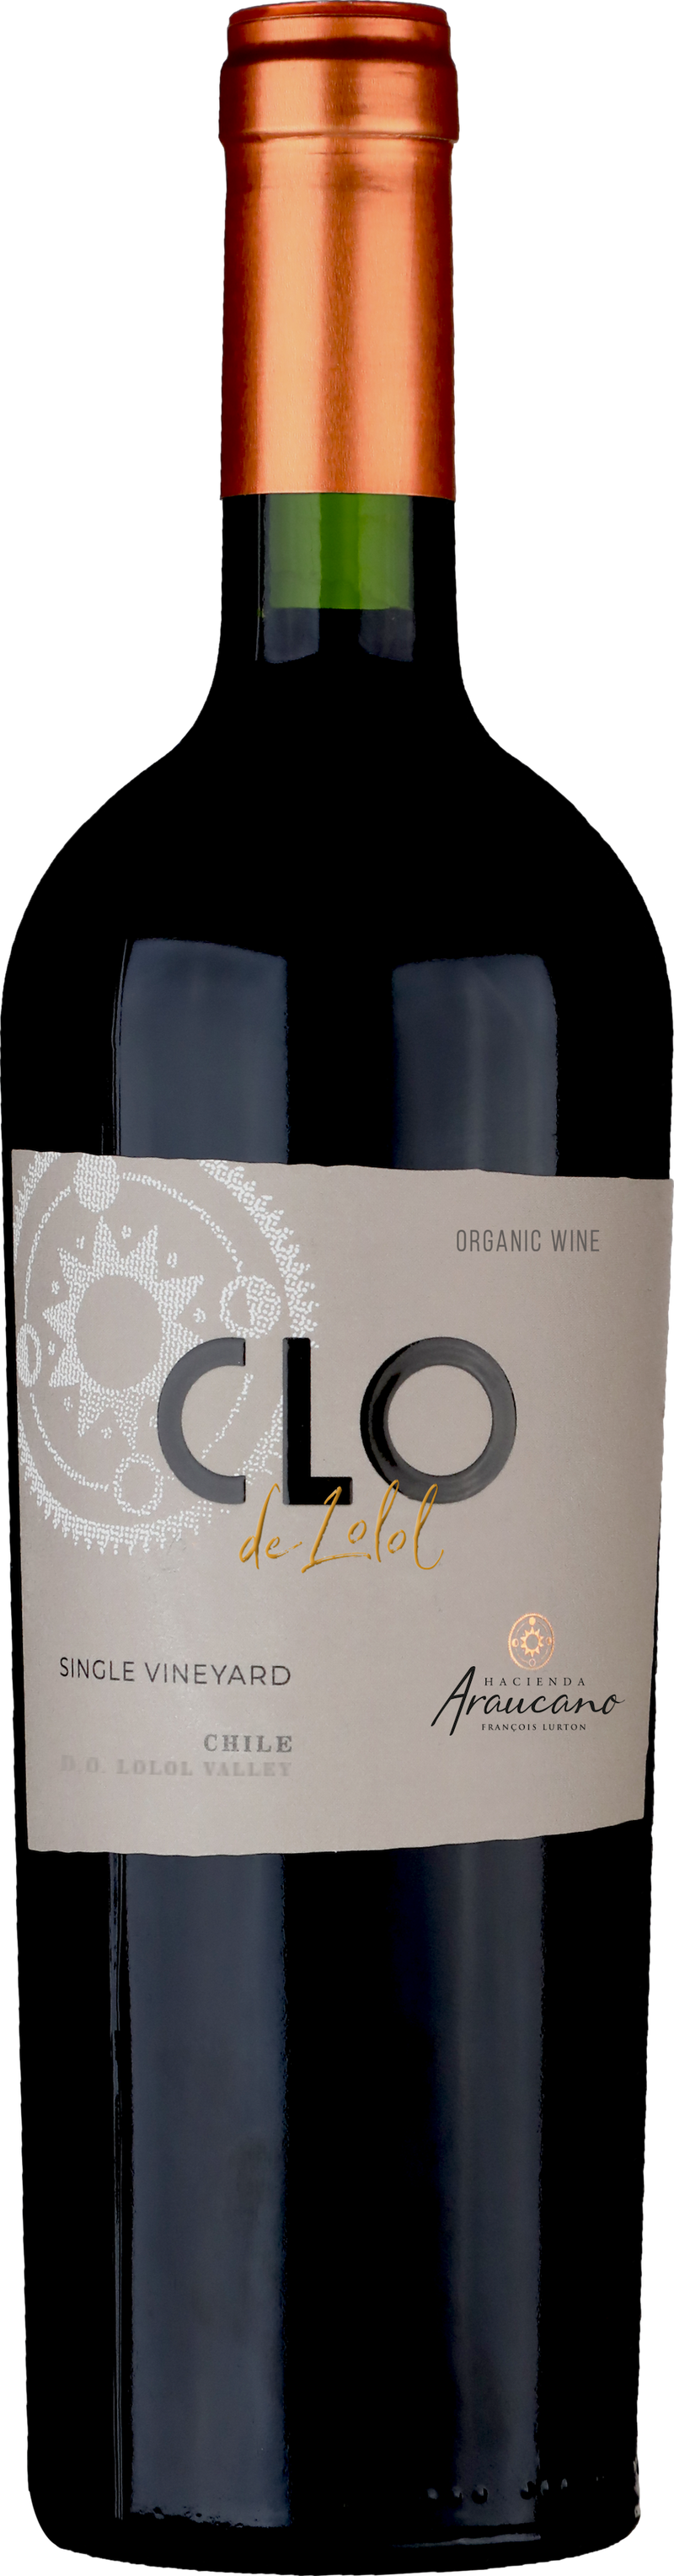 קלו דה לולול - אדום בלינד( יין אורגאני )